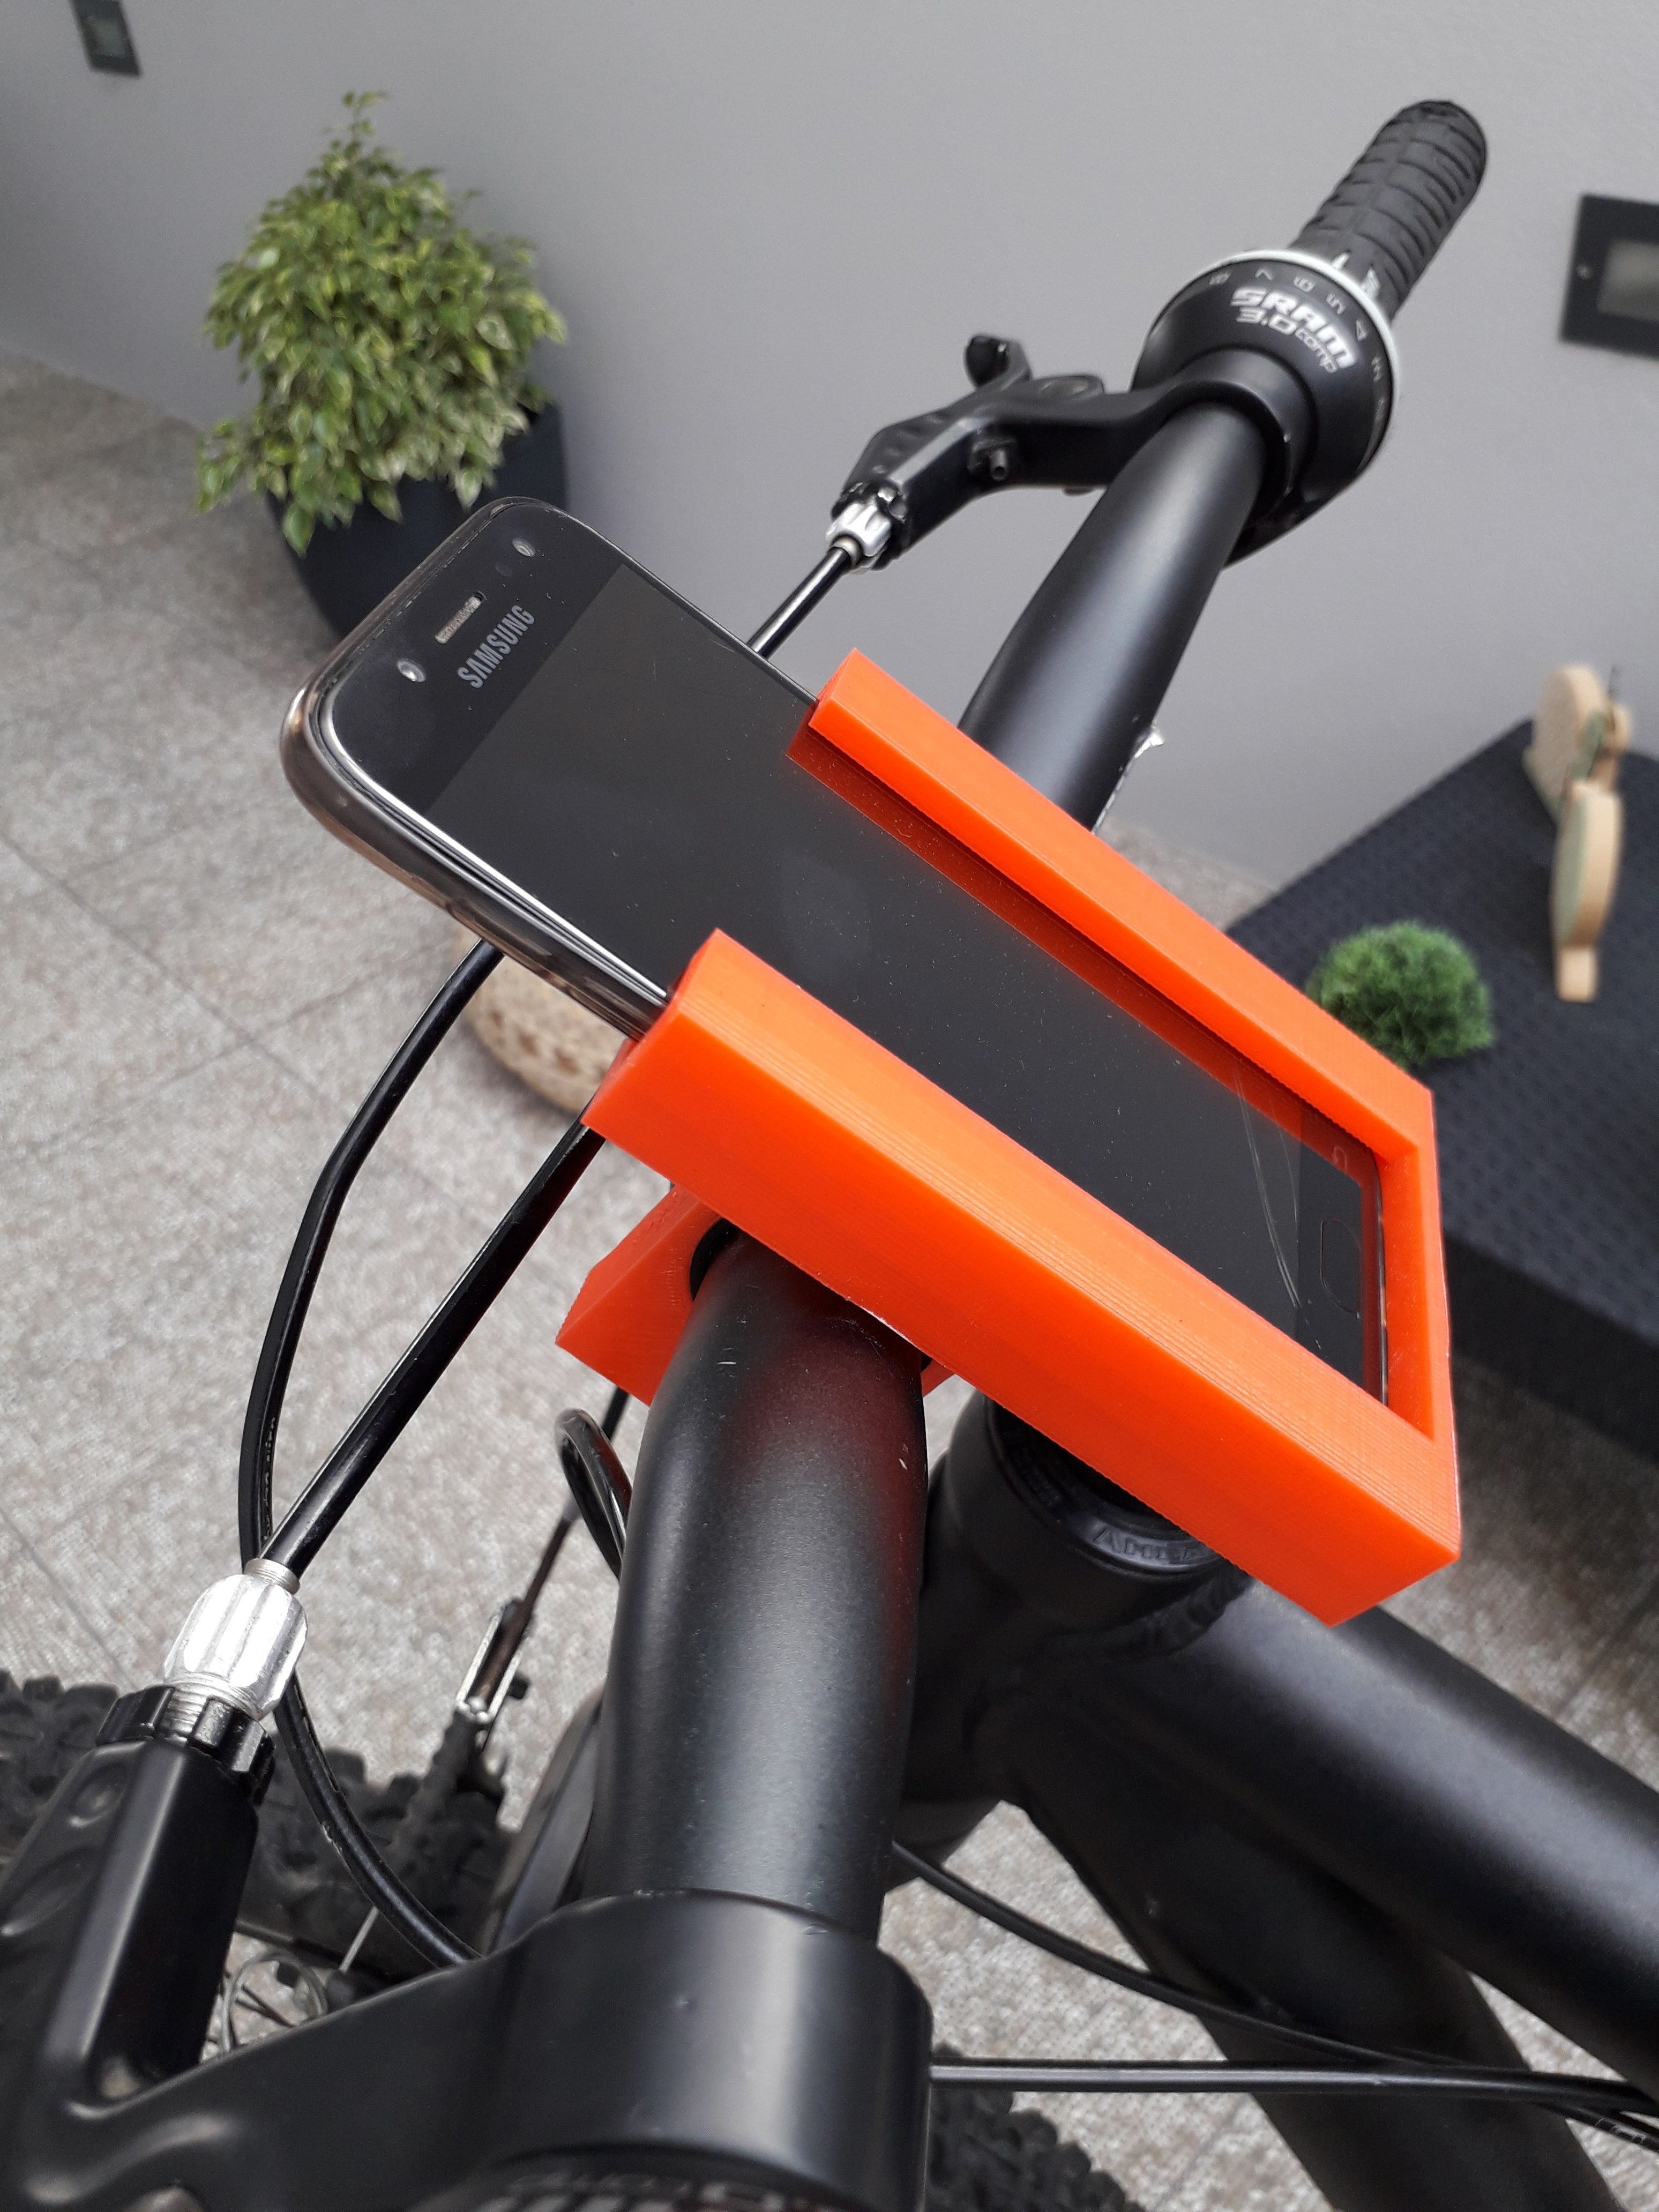 20180831_152219.jpg Fichier STL gratuit Stand Téléphone Pour Vélo・Modèle pour imprimante 3D à télécharger, BrunoSilva